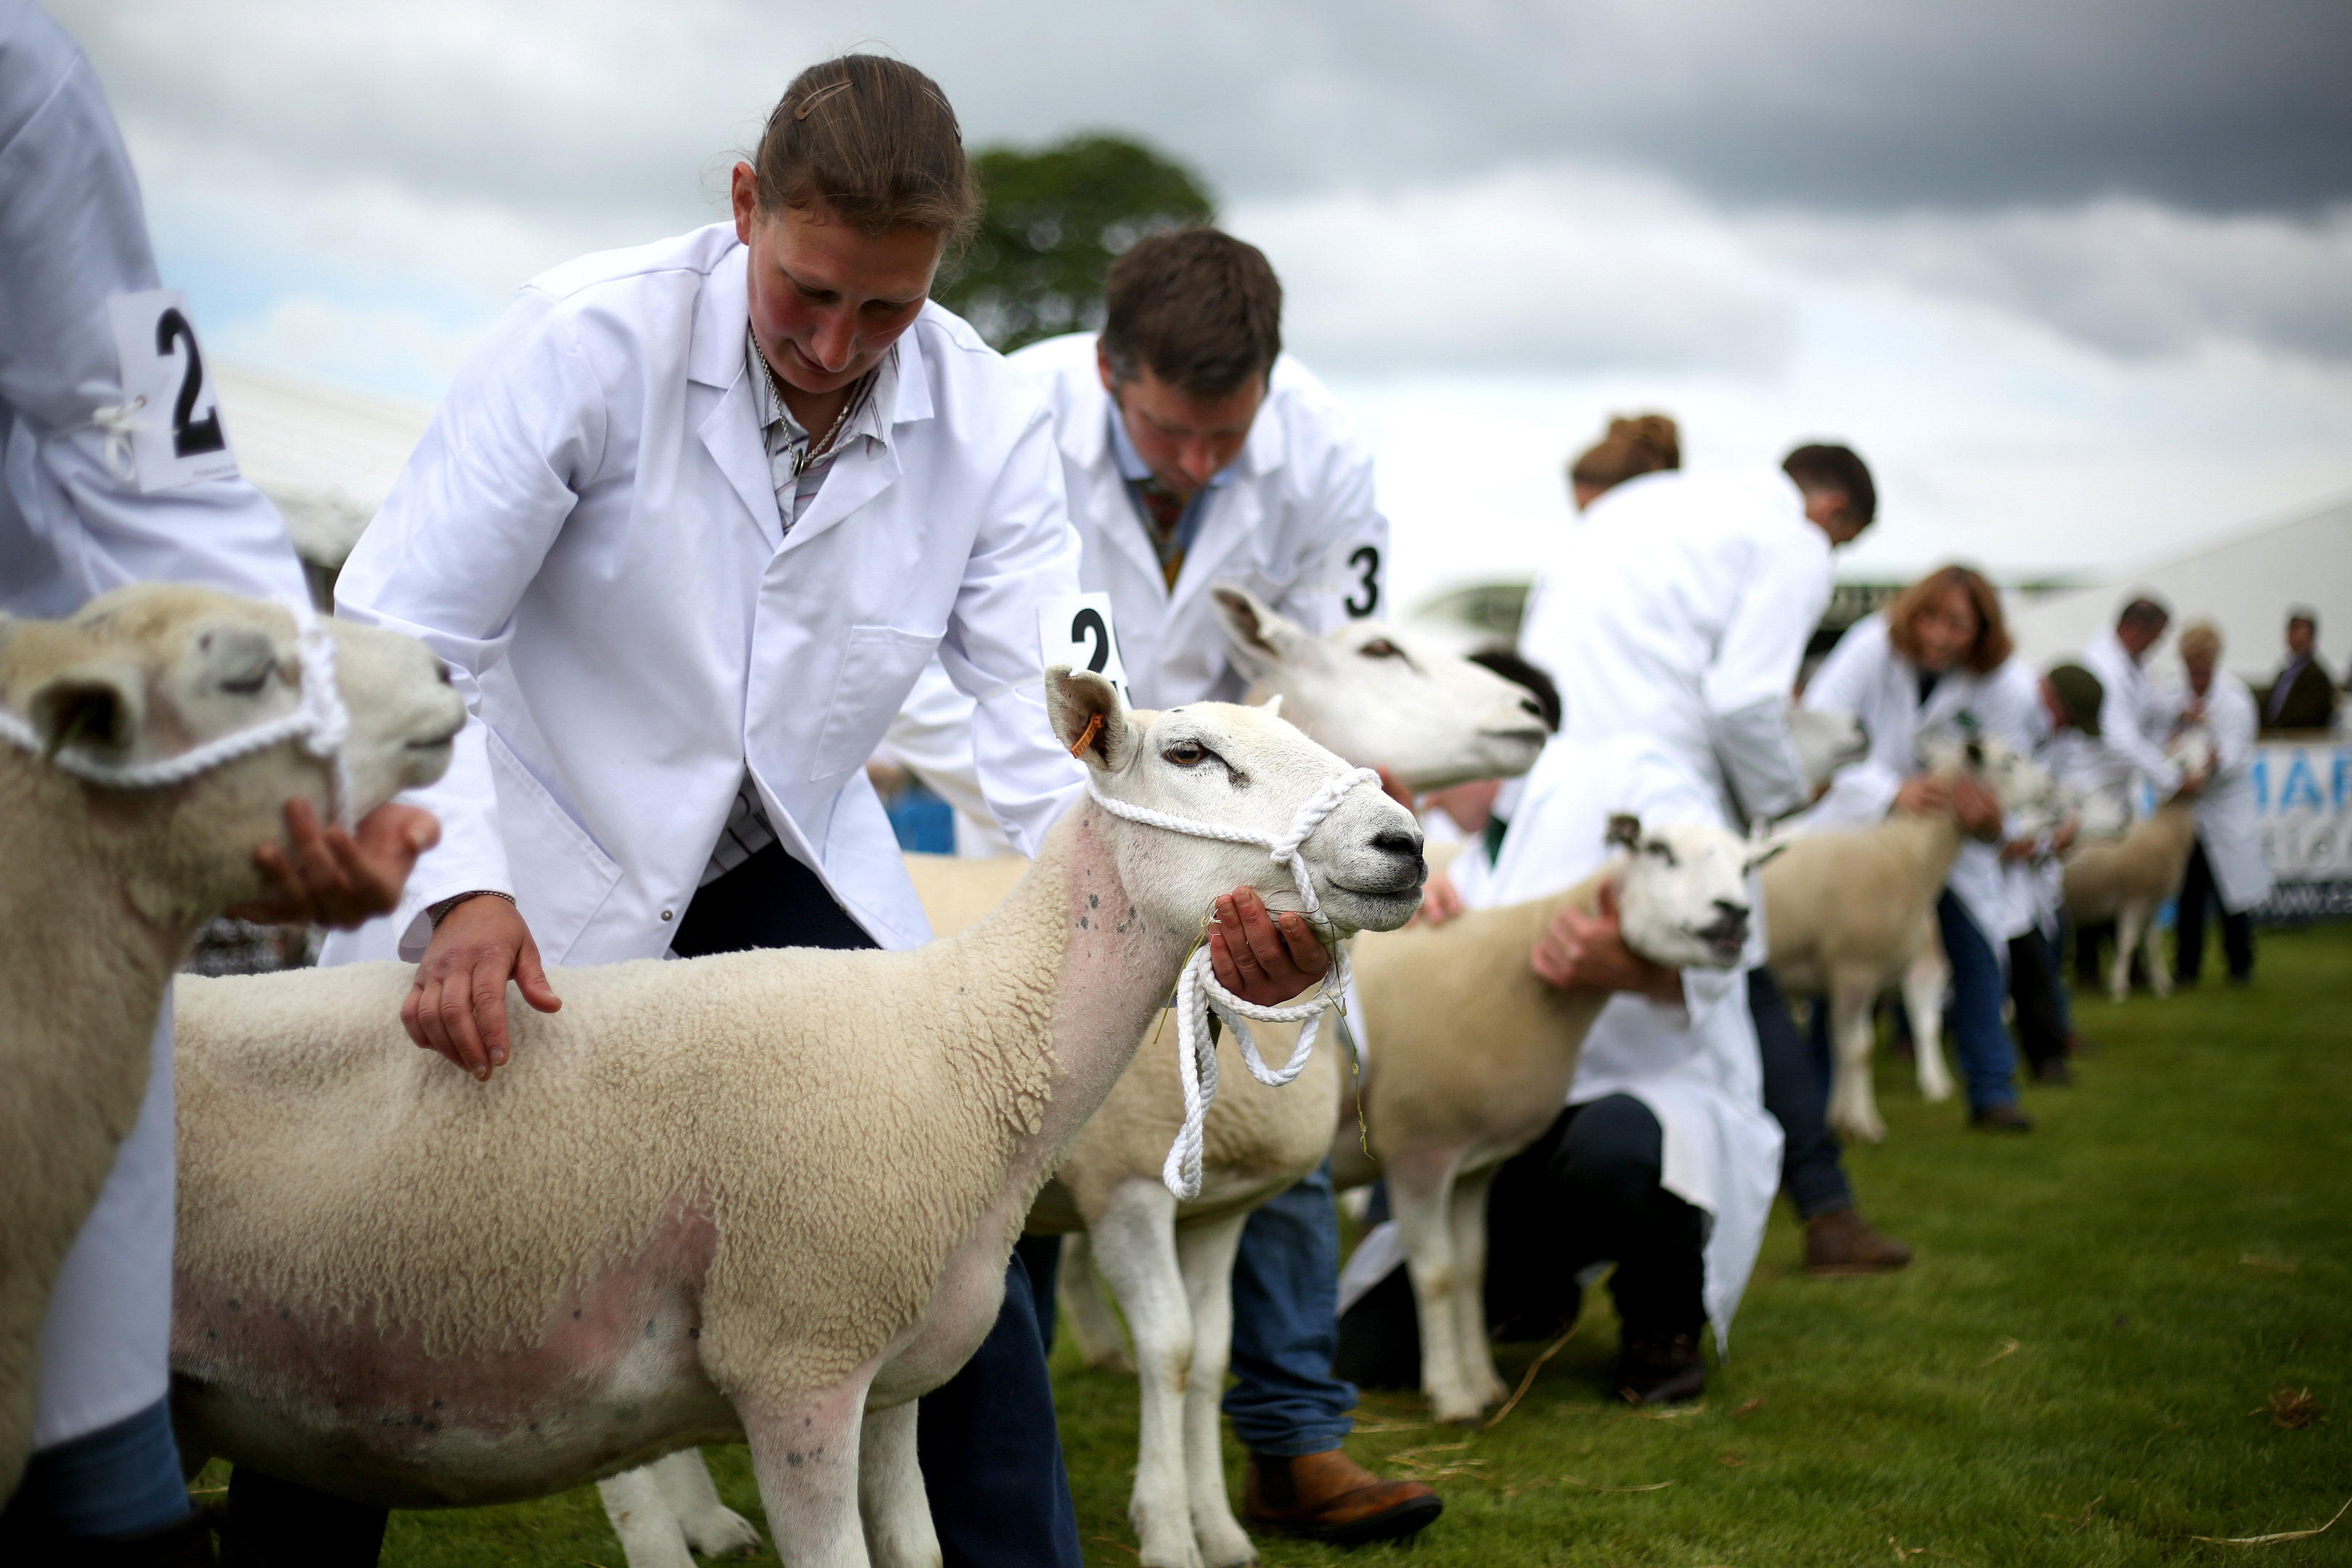 Sheep being shown at Royal Highland Show.